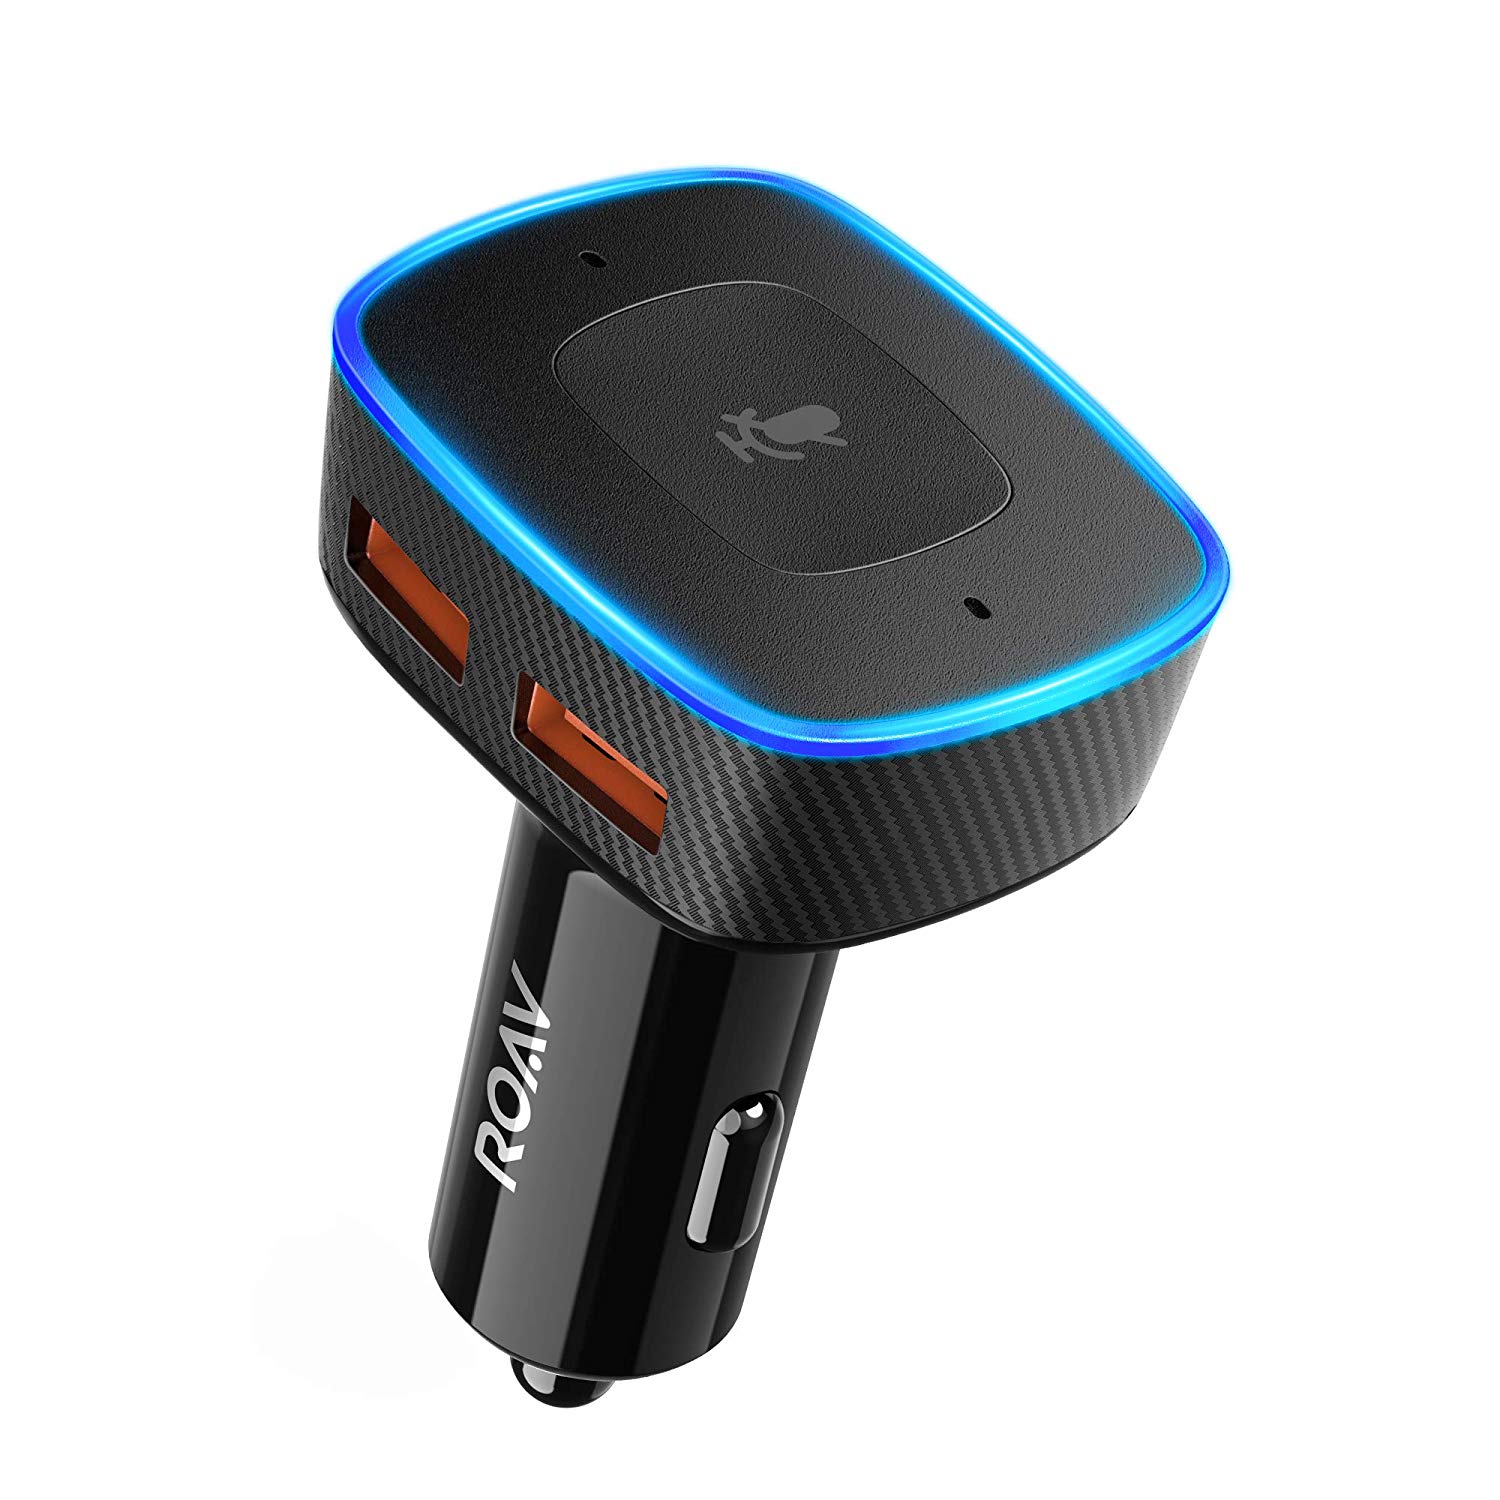 Der Anker Roav VIVA ist ein Lade-Adapter für das Auto mit integrierter Amazon Alexa Sprachsteuerung und zwei USB-Ladeports.